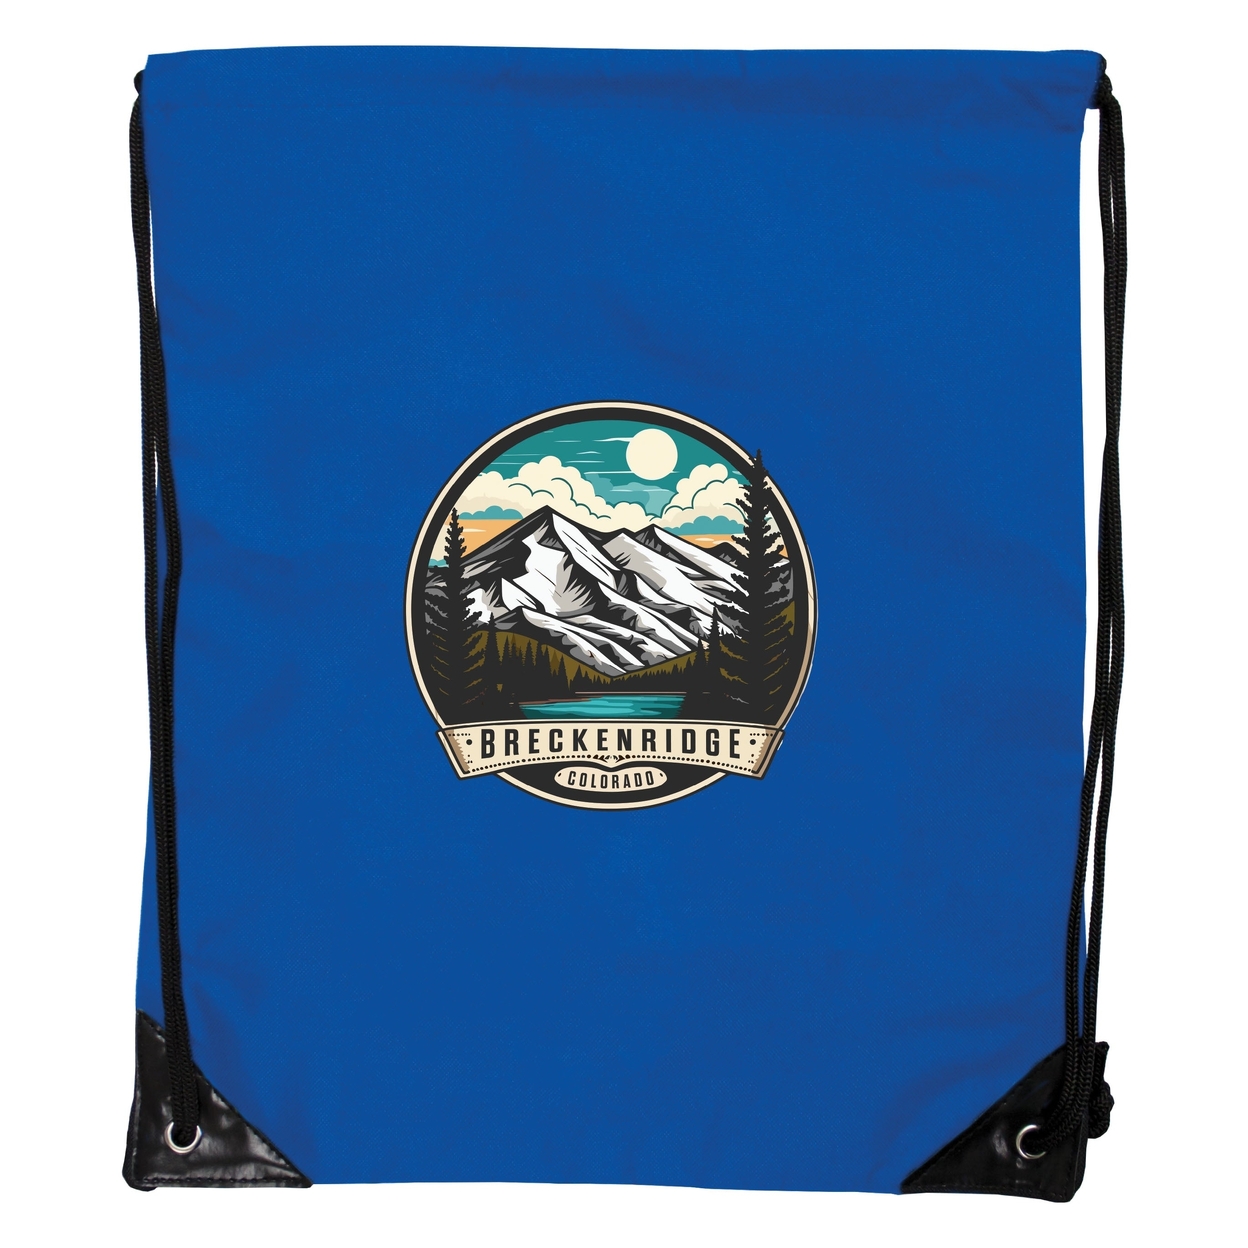 Breckenridge Colorado Design A Souvenir Cinch Bag With Drawstring Backpack Black - Orange